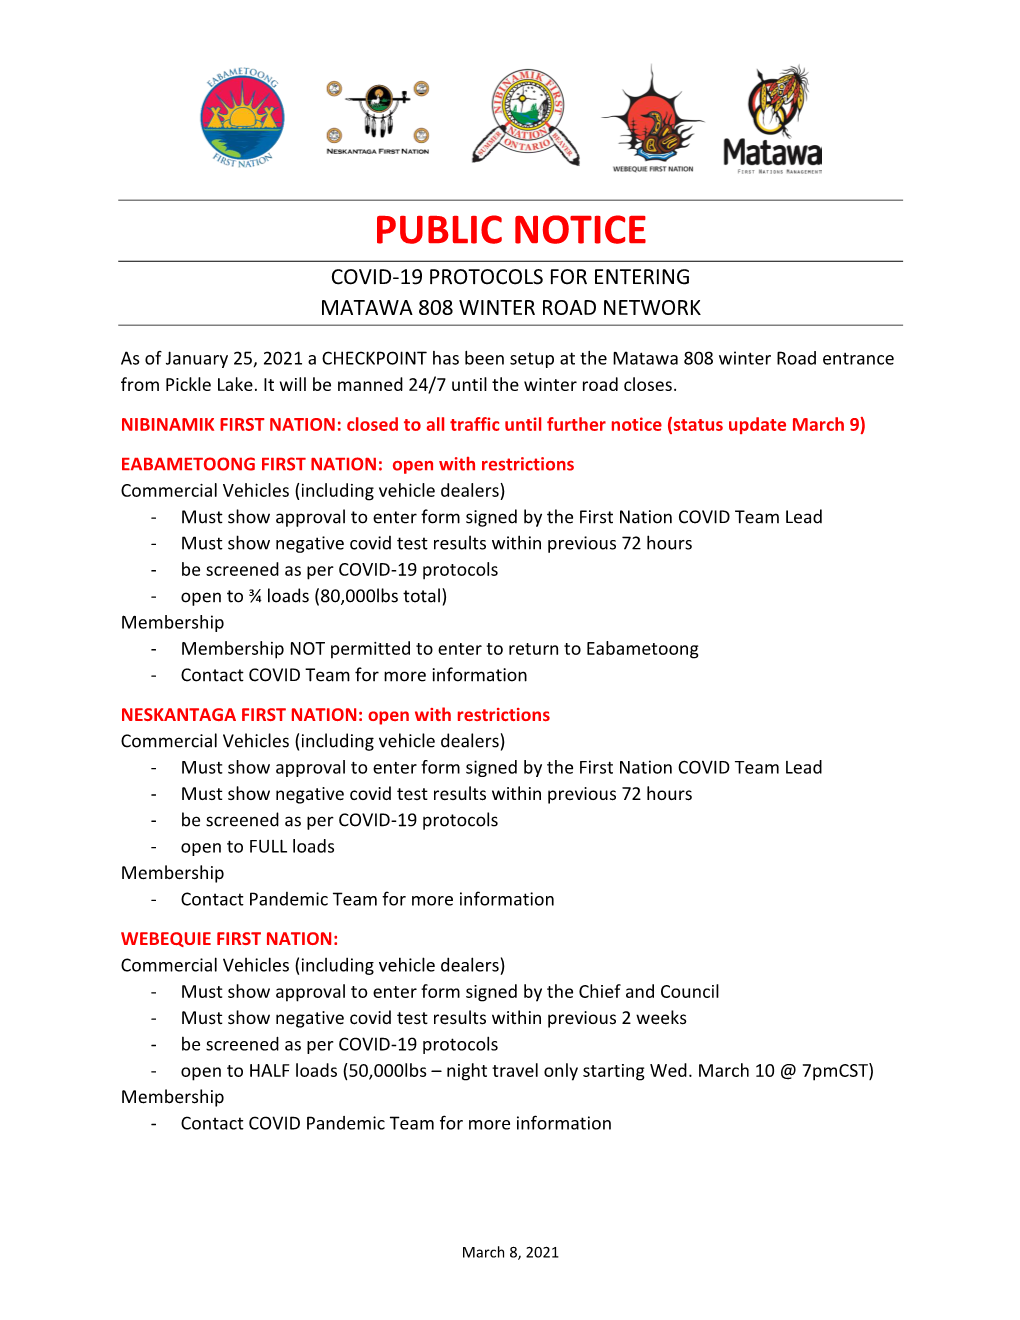 Public Notice Covid-19 Protocols for Entering Matawa 808 Winter Road Network